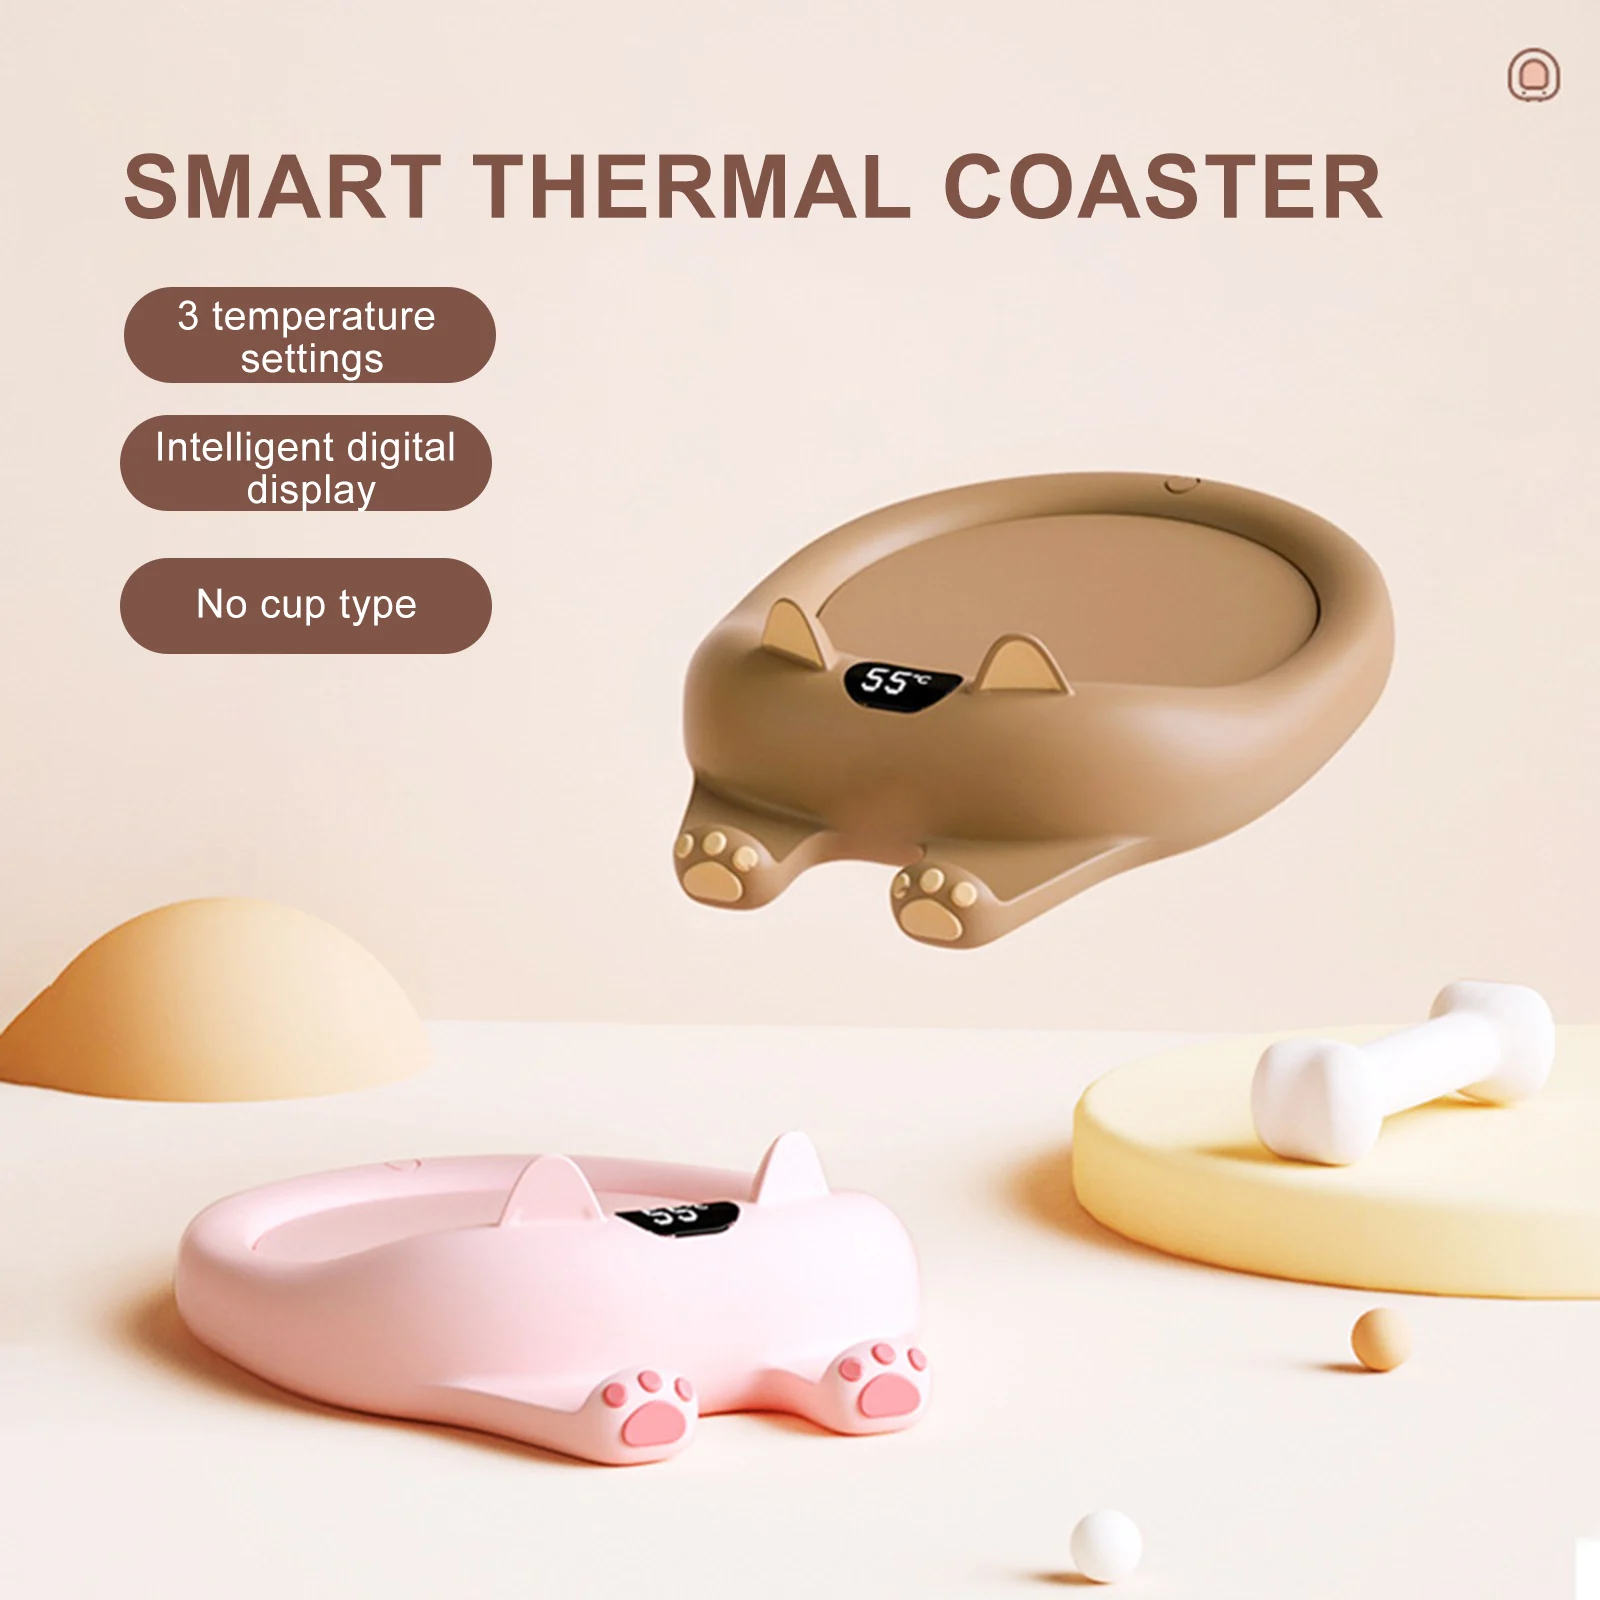 Karikatür kahve kupa ısıtıcı 3-speed Ayarı Sabit Sıcaklık Bardak Anti-haşlanma termal Yalıtım Coaster Ev Ofis için